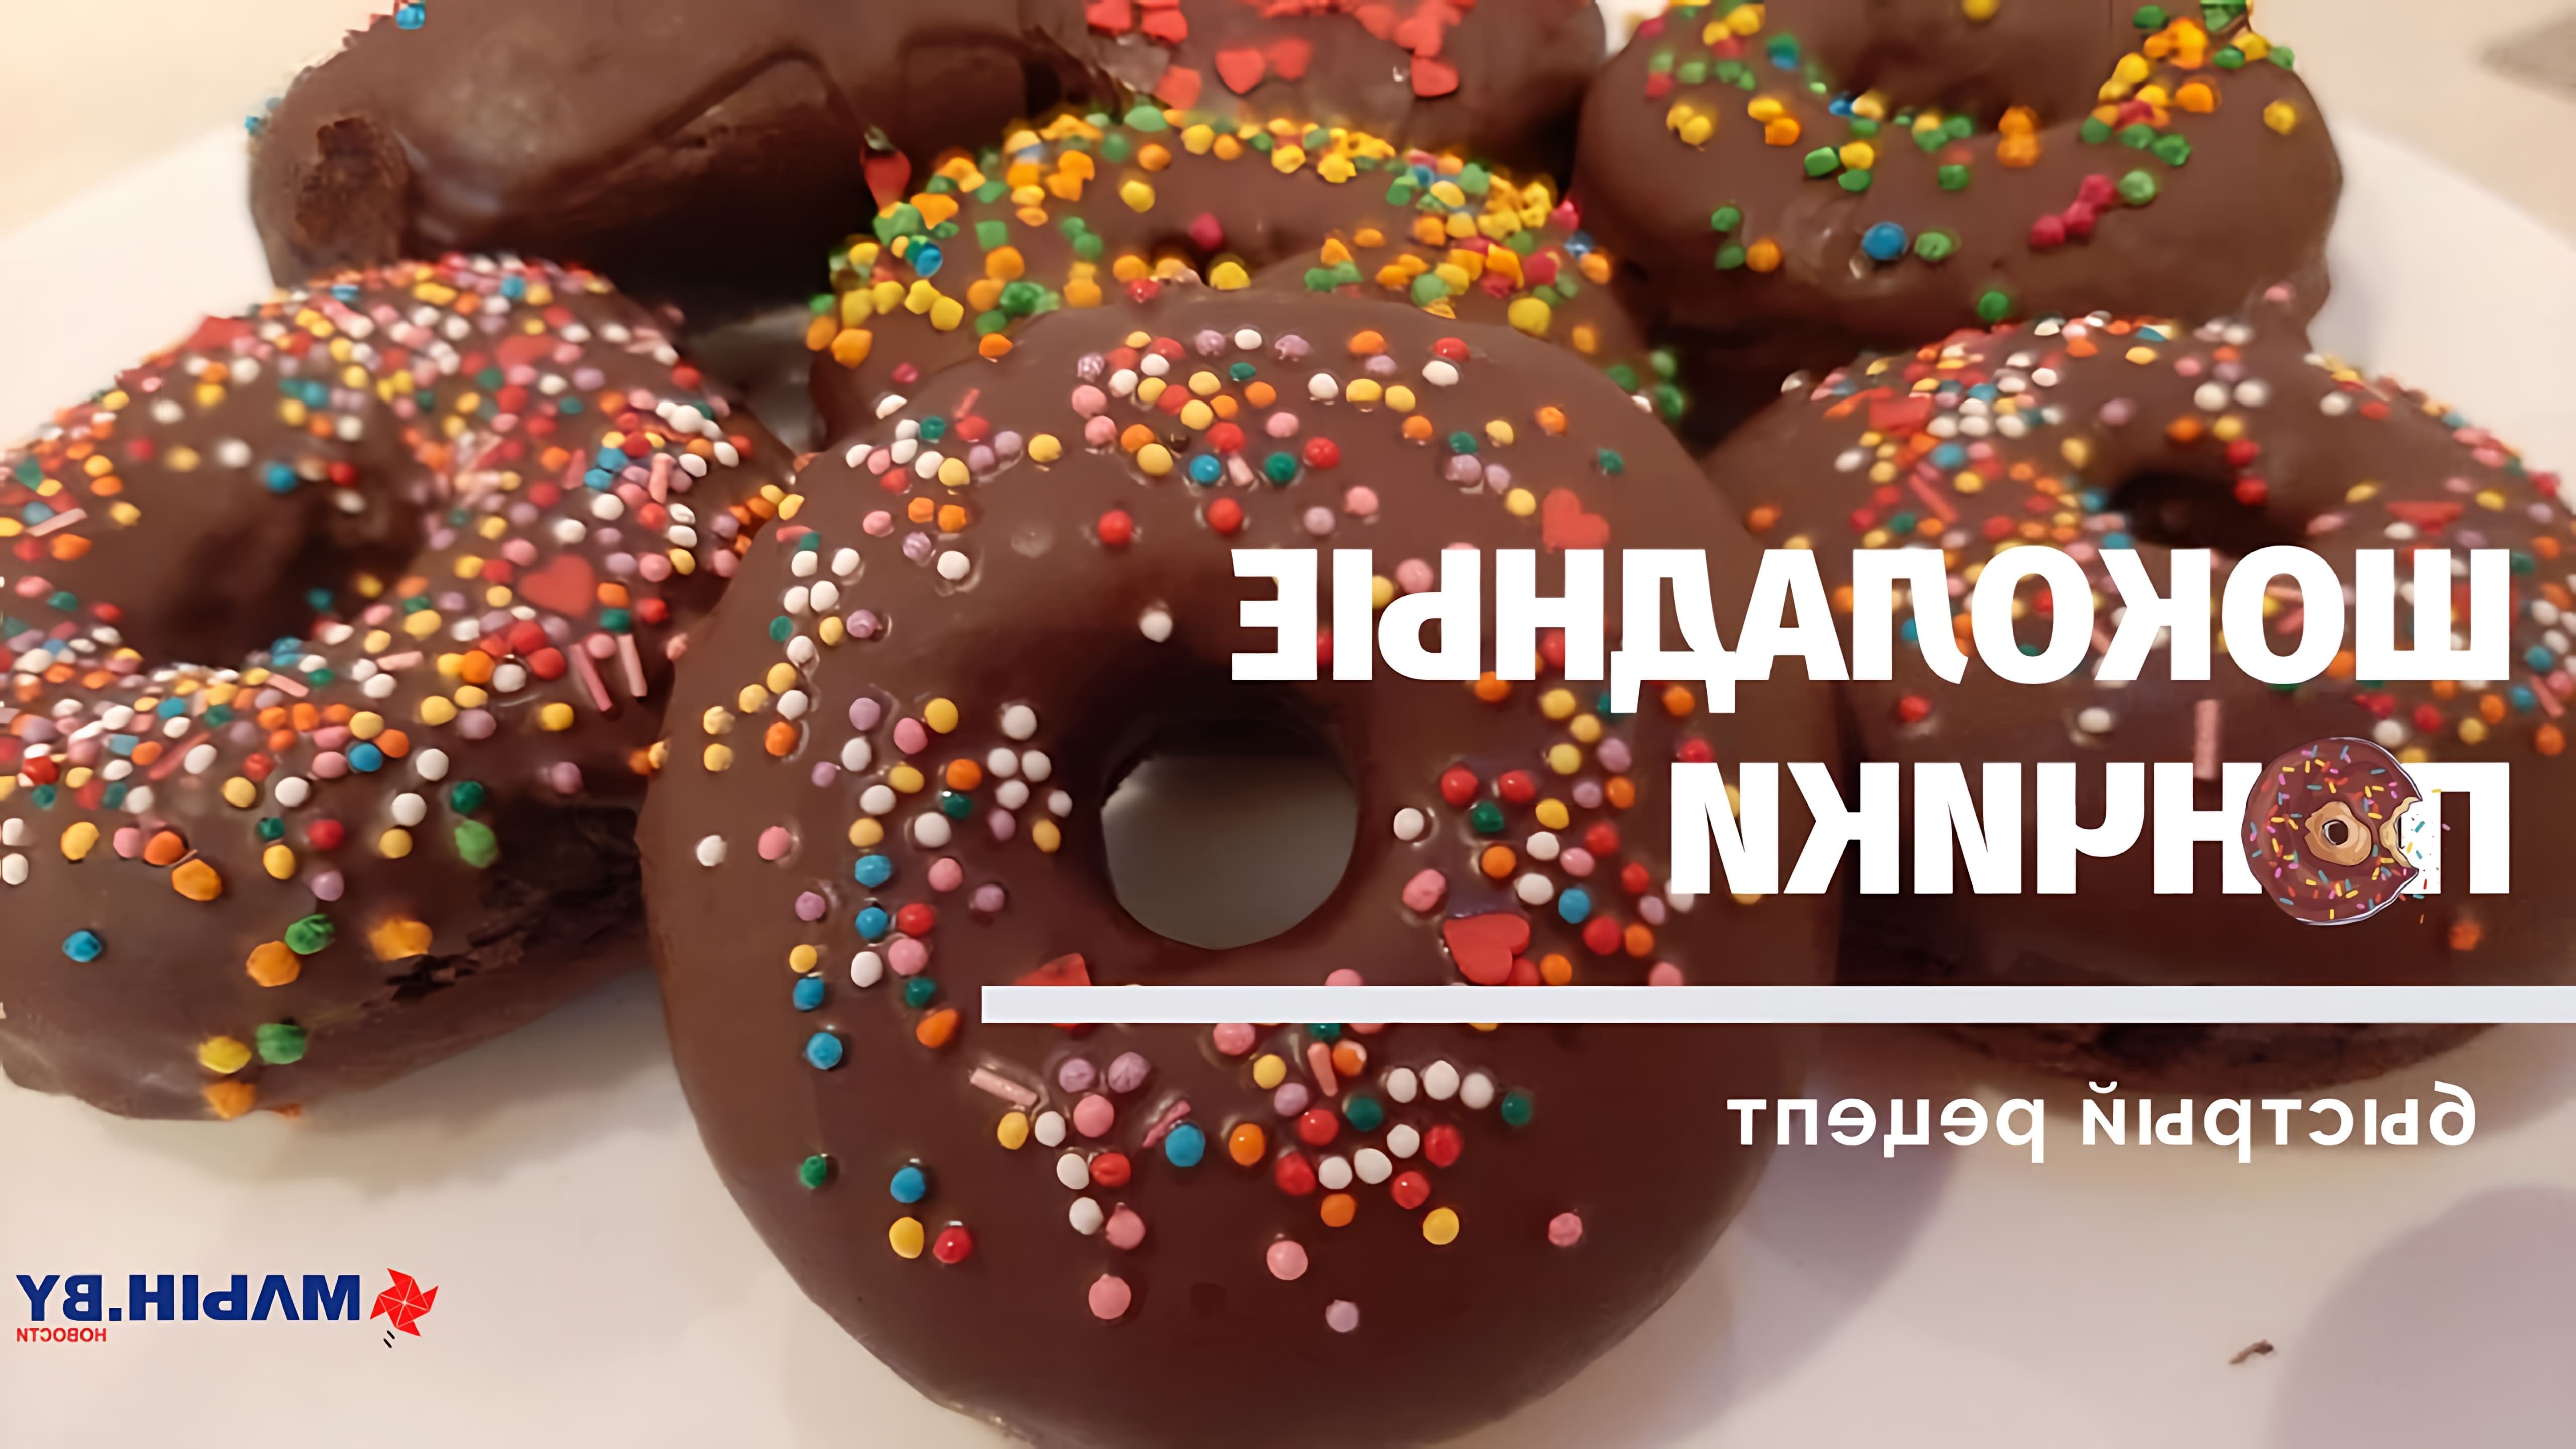 Шоколадные пончики в духовке - это быстрый и вкусный десерт, который можно приготовить в домашних условиях